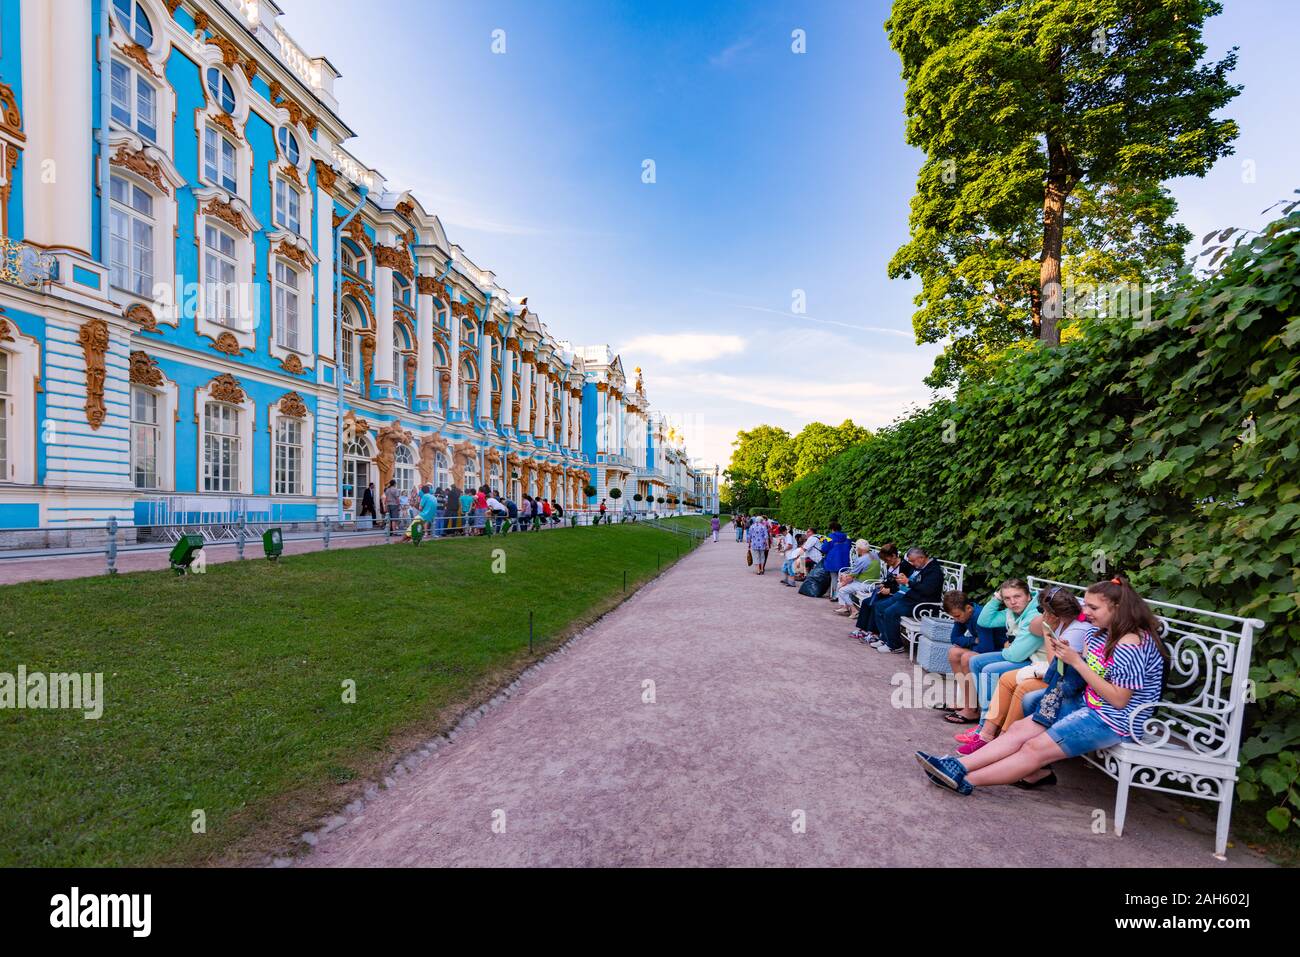 San Petersburgo, Rusia - Junio 21, 2015: Tsarskoye Selo Palace en la ciudad de Pushkin, cerca de San Petersburgo, Rusia. La arquitectura y los viajes en Europa Foto de stock